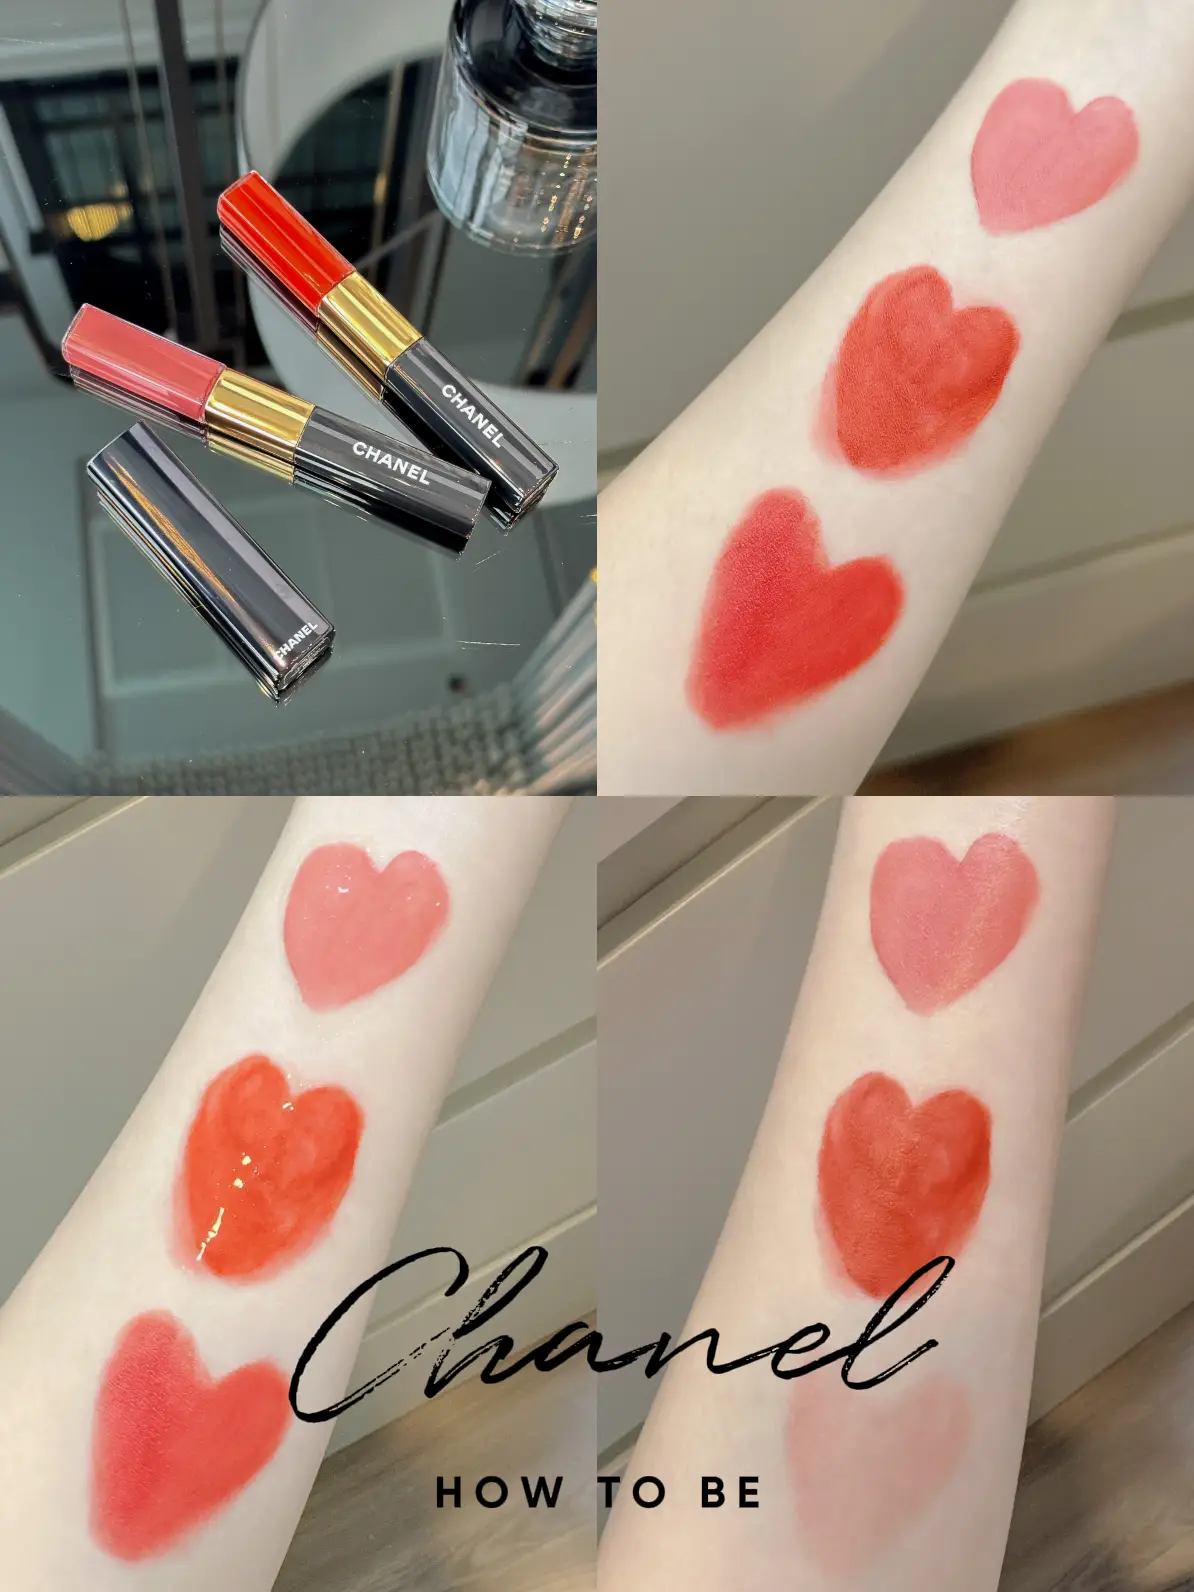 chanel duo ultra liquid lipstick